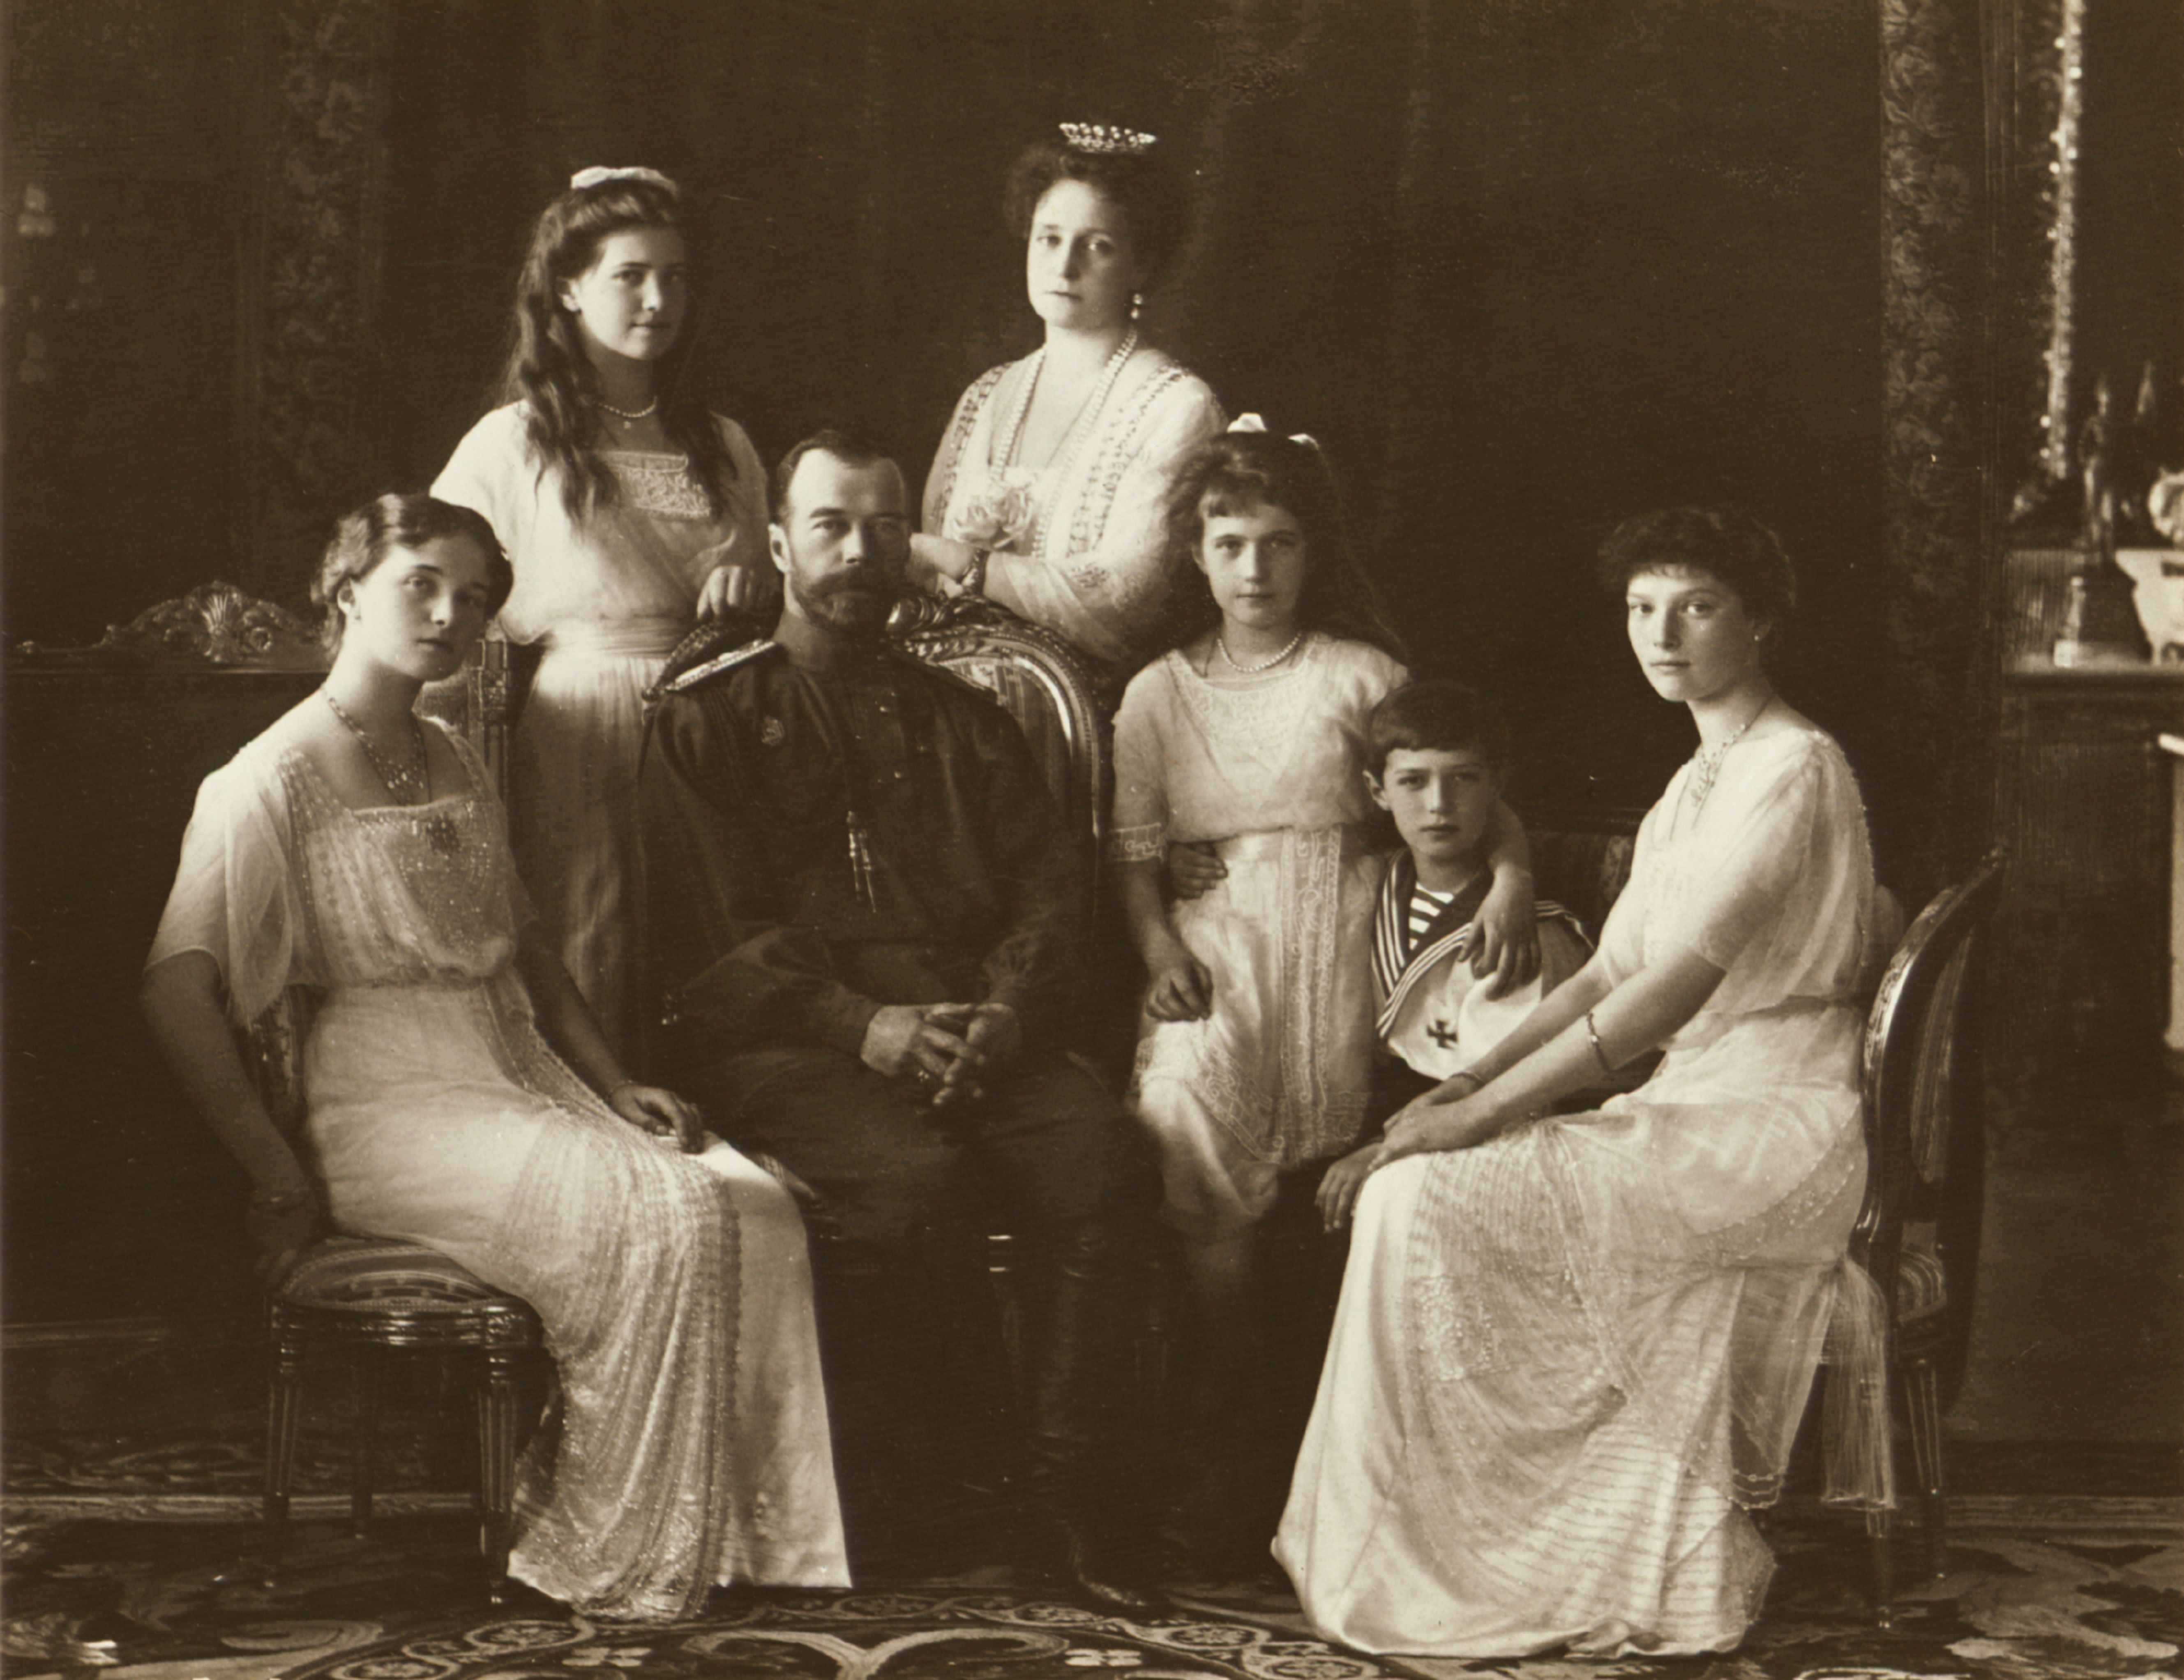 The True Story of 'The Last Czars' on Netflix - Romanov Family History